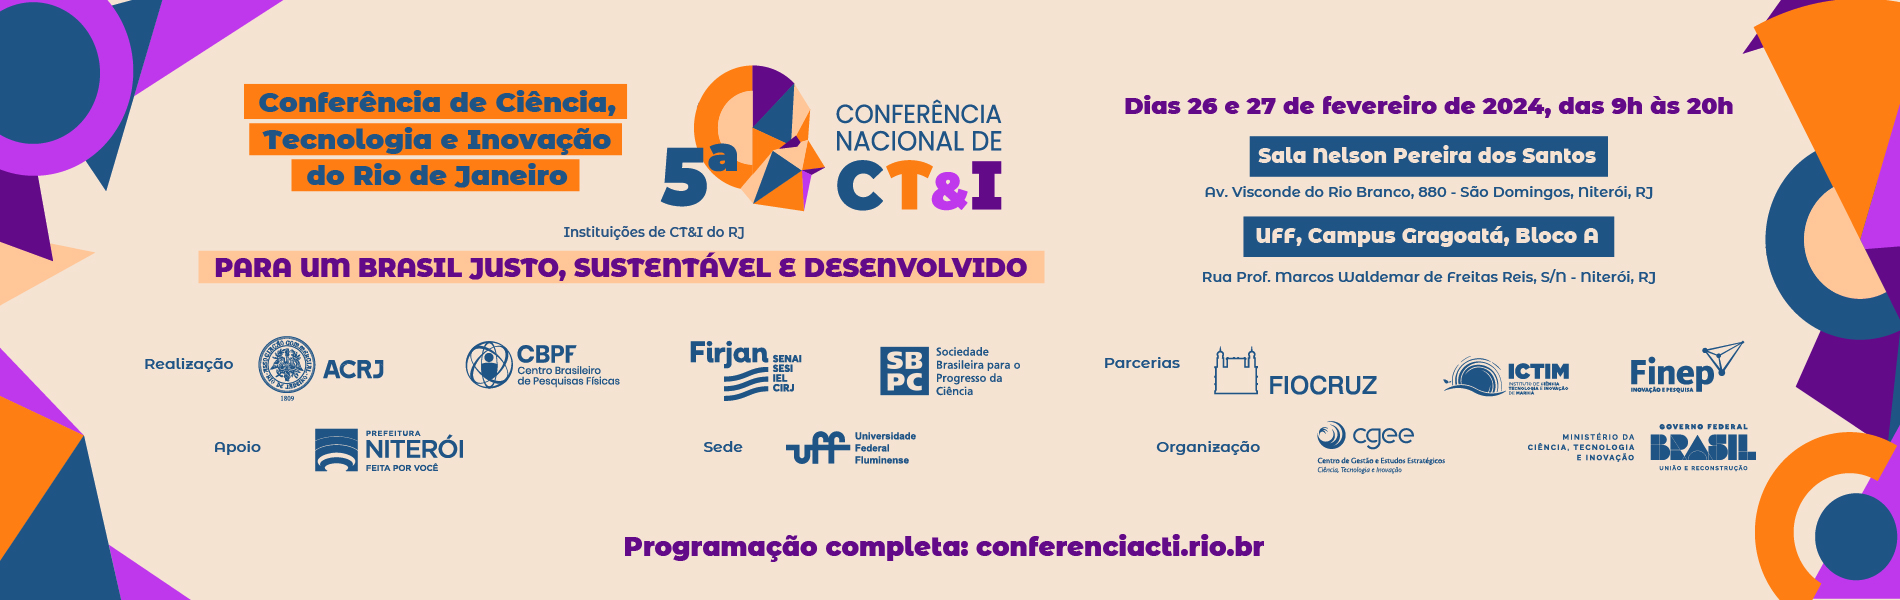 Cartaz de divulgação da Conferência de Ciência, Tecnologia e Inovação do RJ, a acontecer de 26 a 27 de fevereiro.